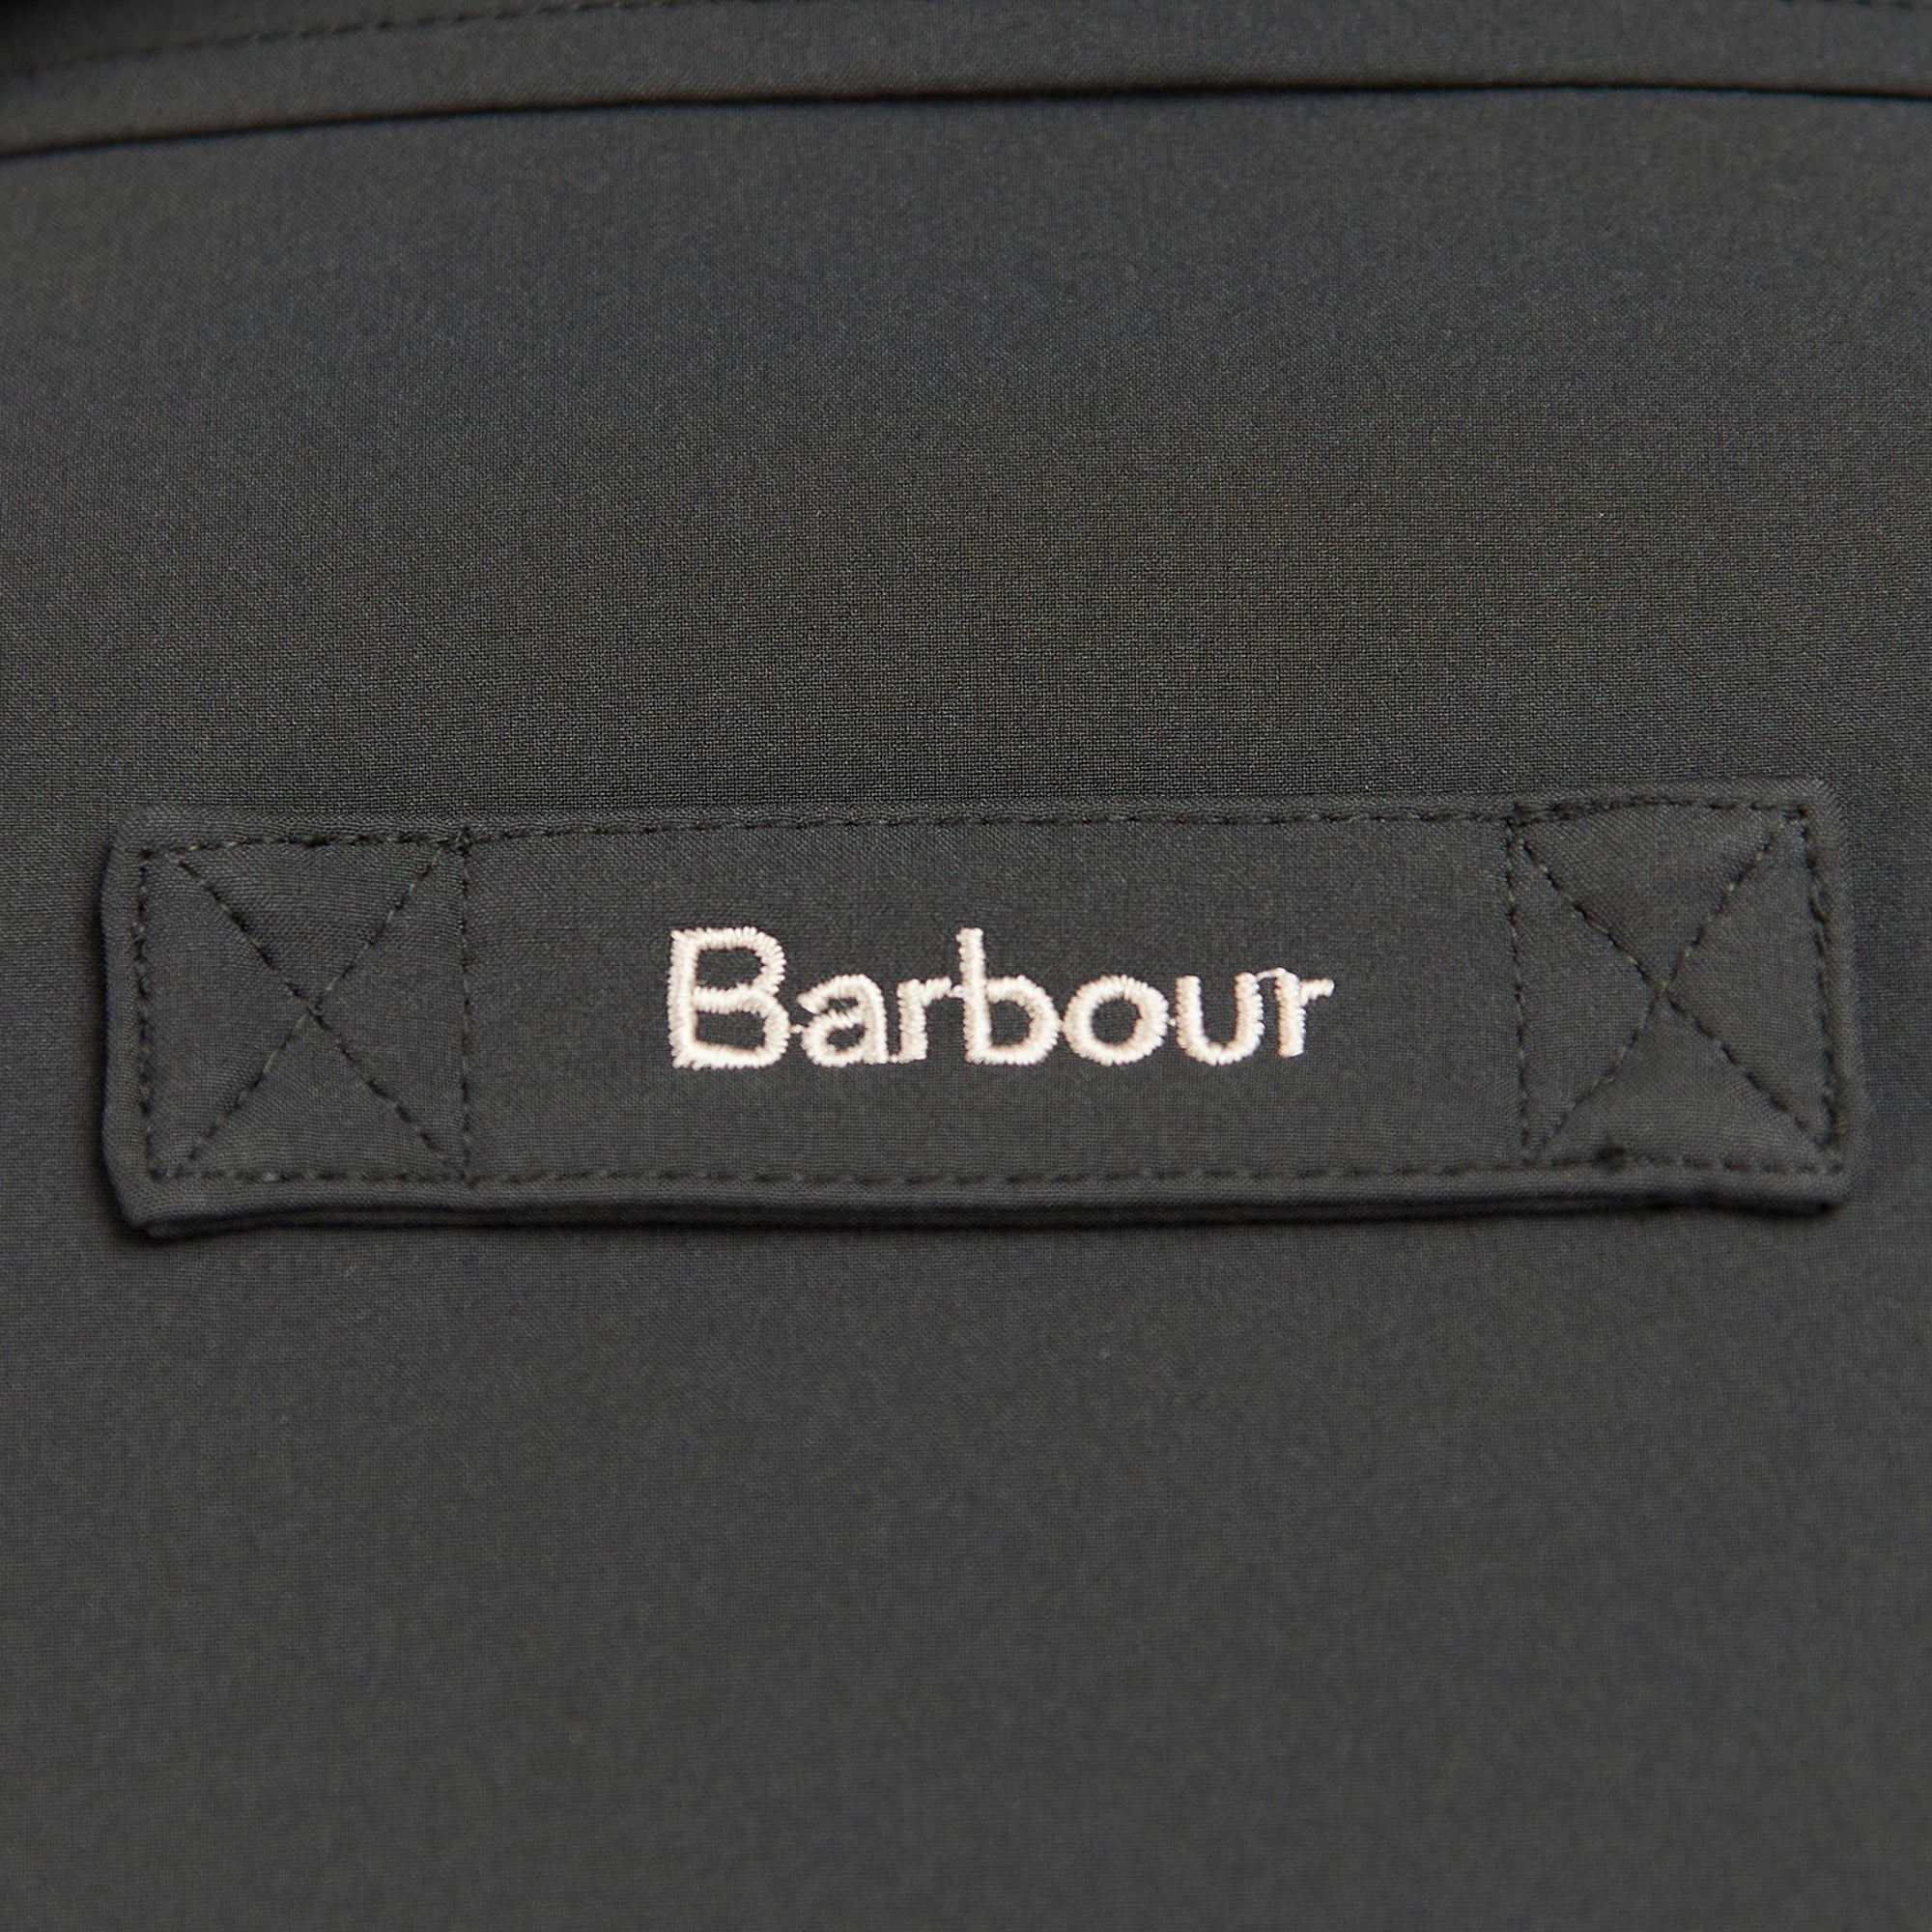 Barbour Winter Peak Fleece Jacket - Black